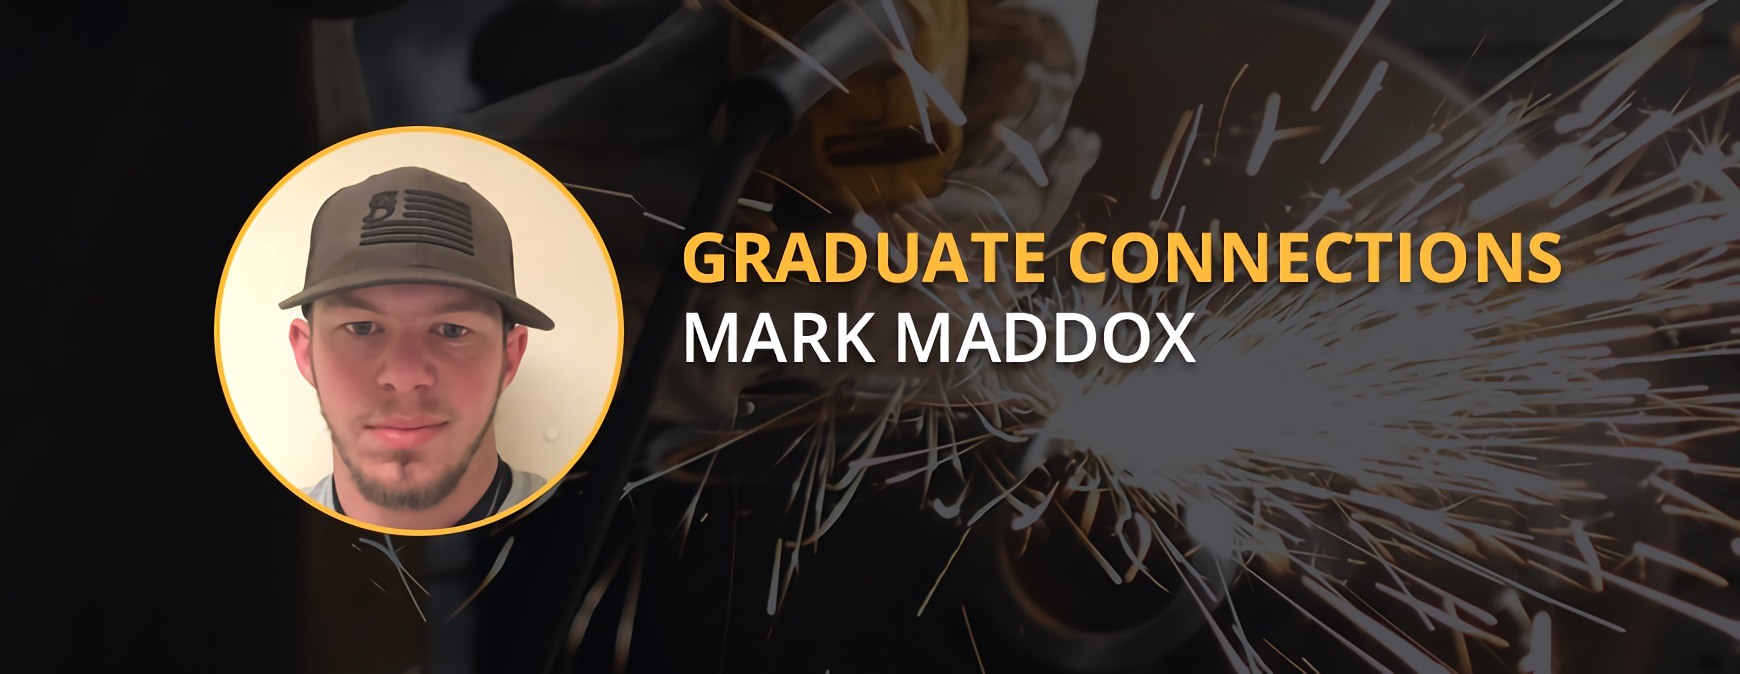 Conexiones de graduados de Mark Maddox